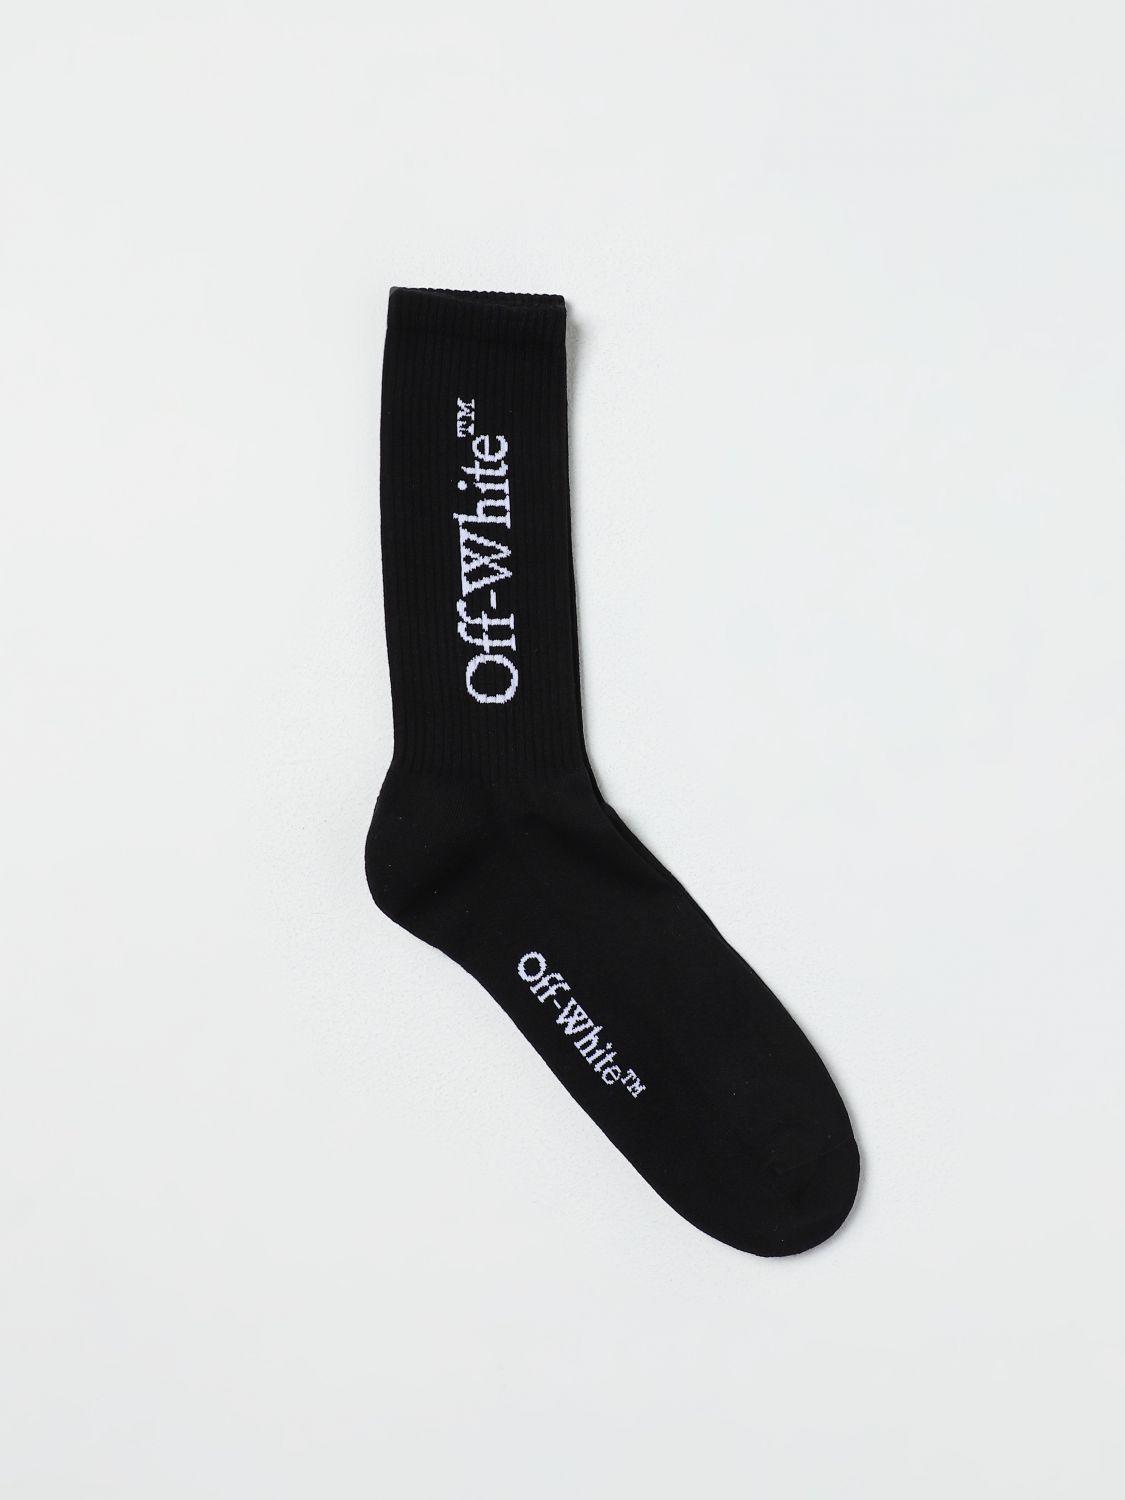 Shop Off-white Socks  Men Color Black